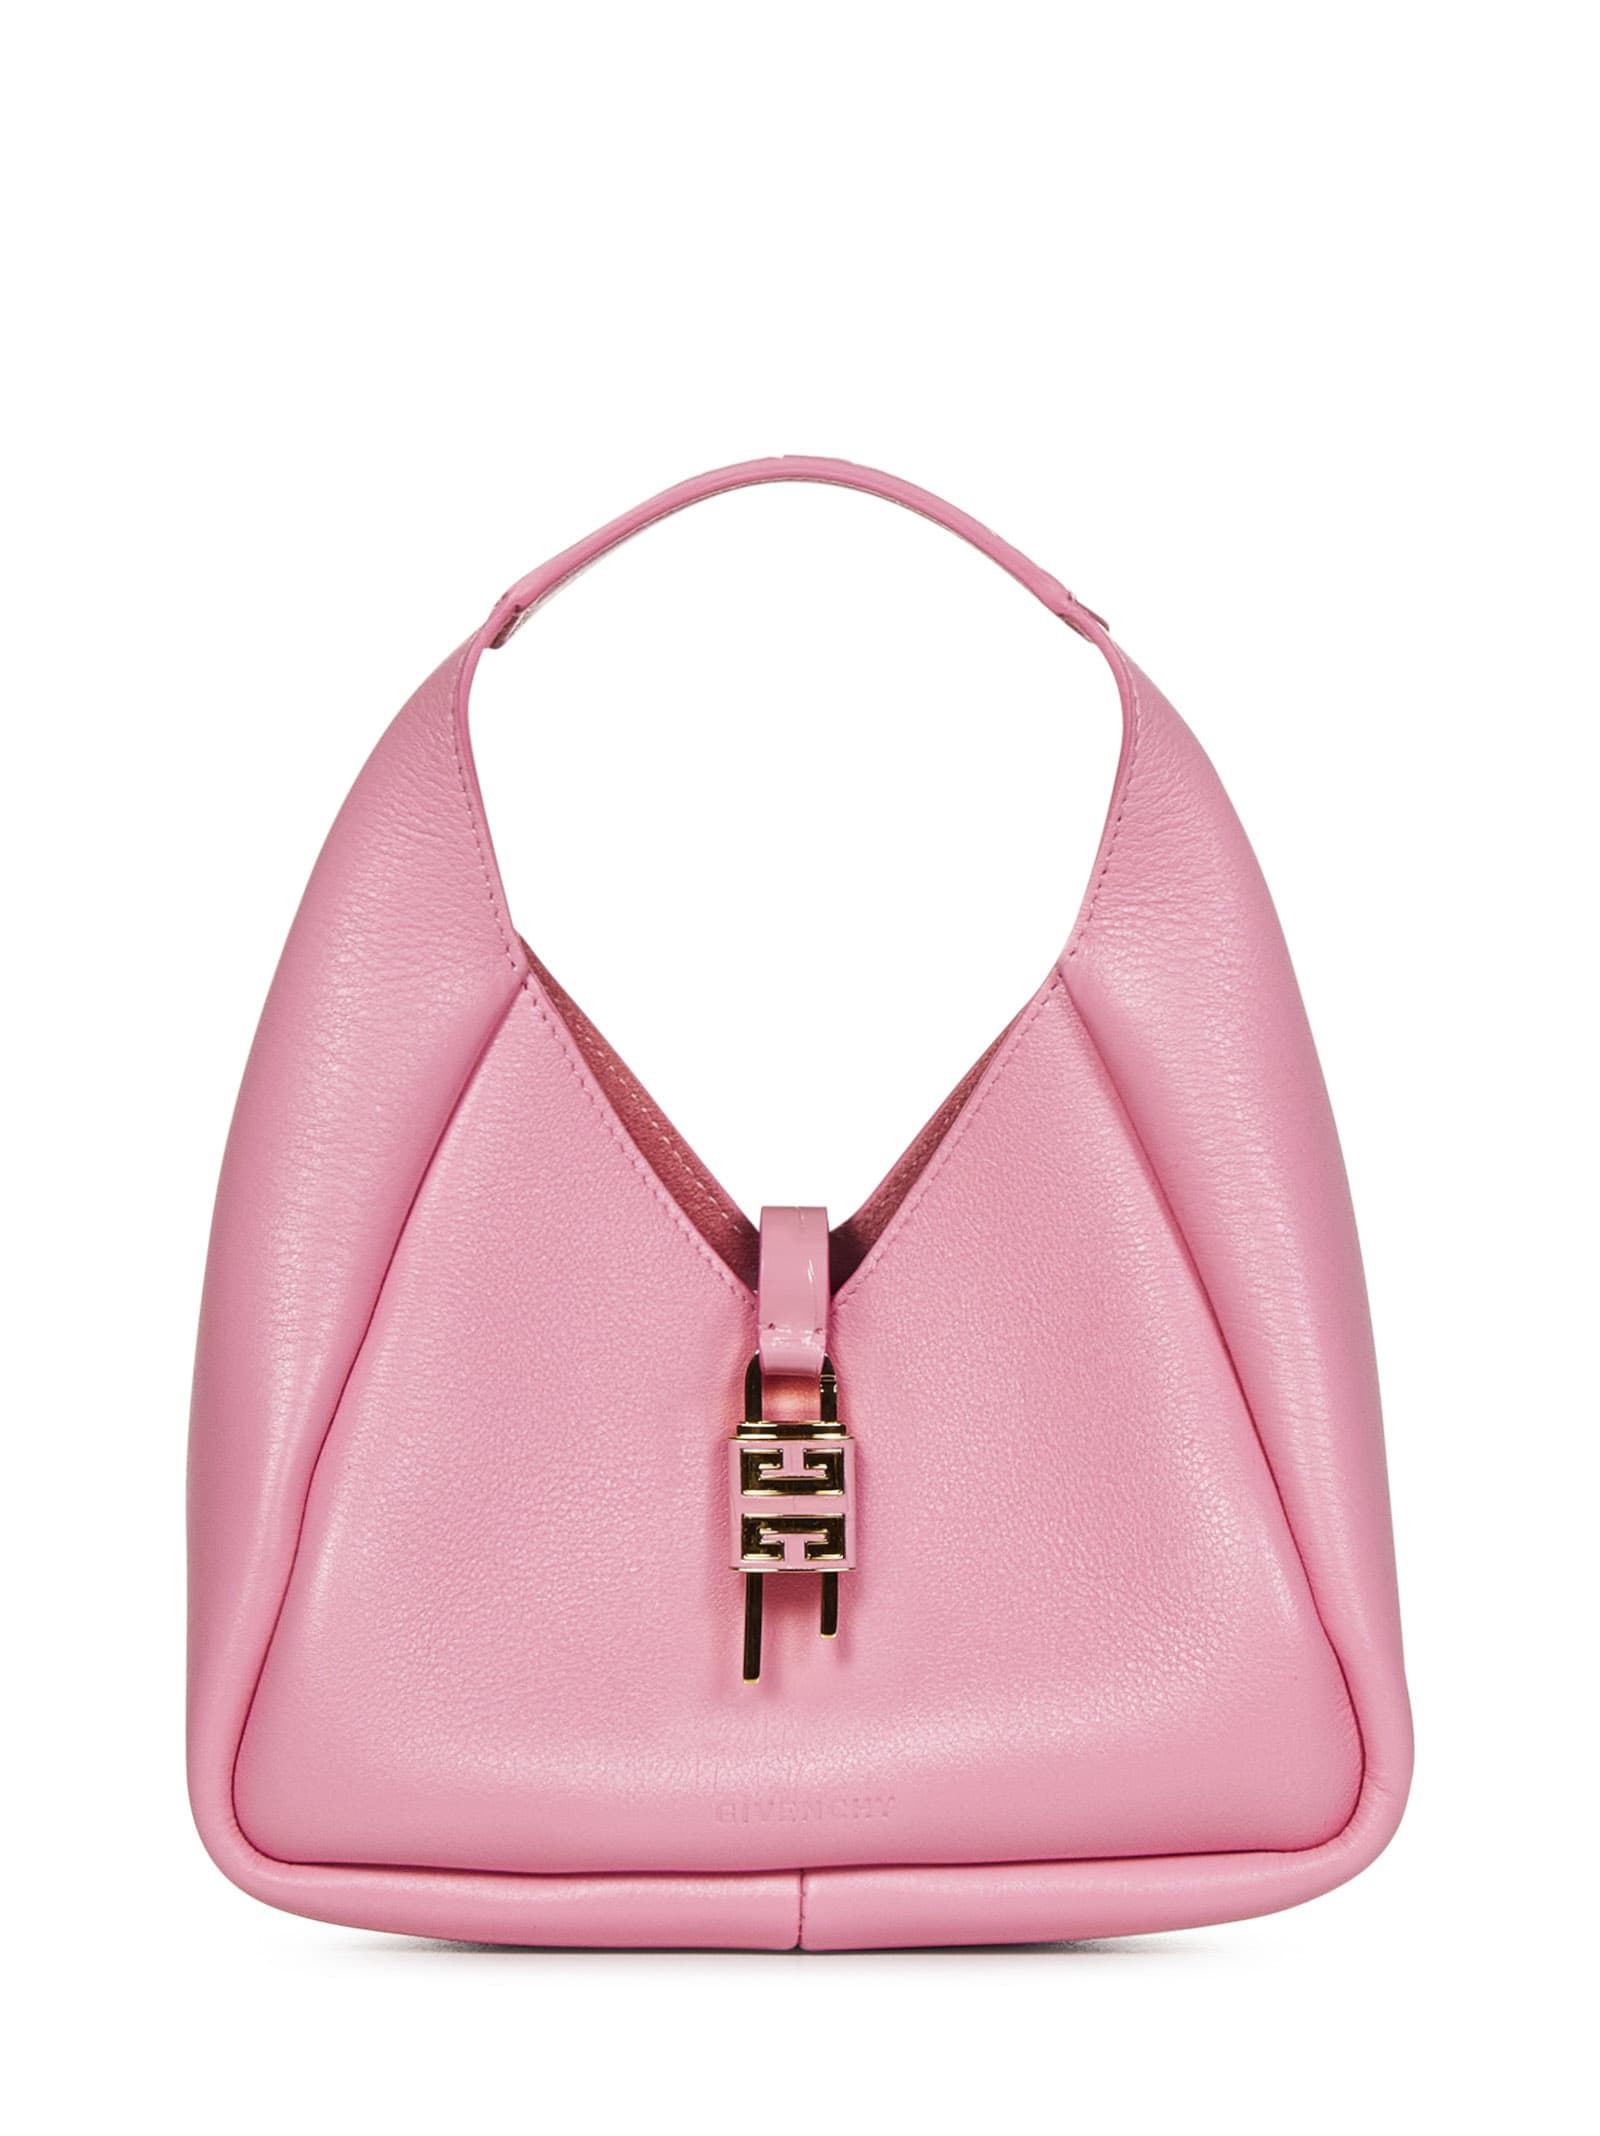 Givenchy G-hobo Mini Handbag